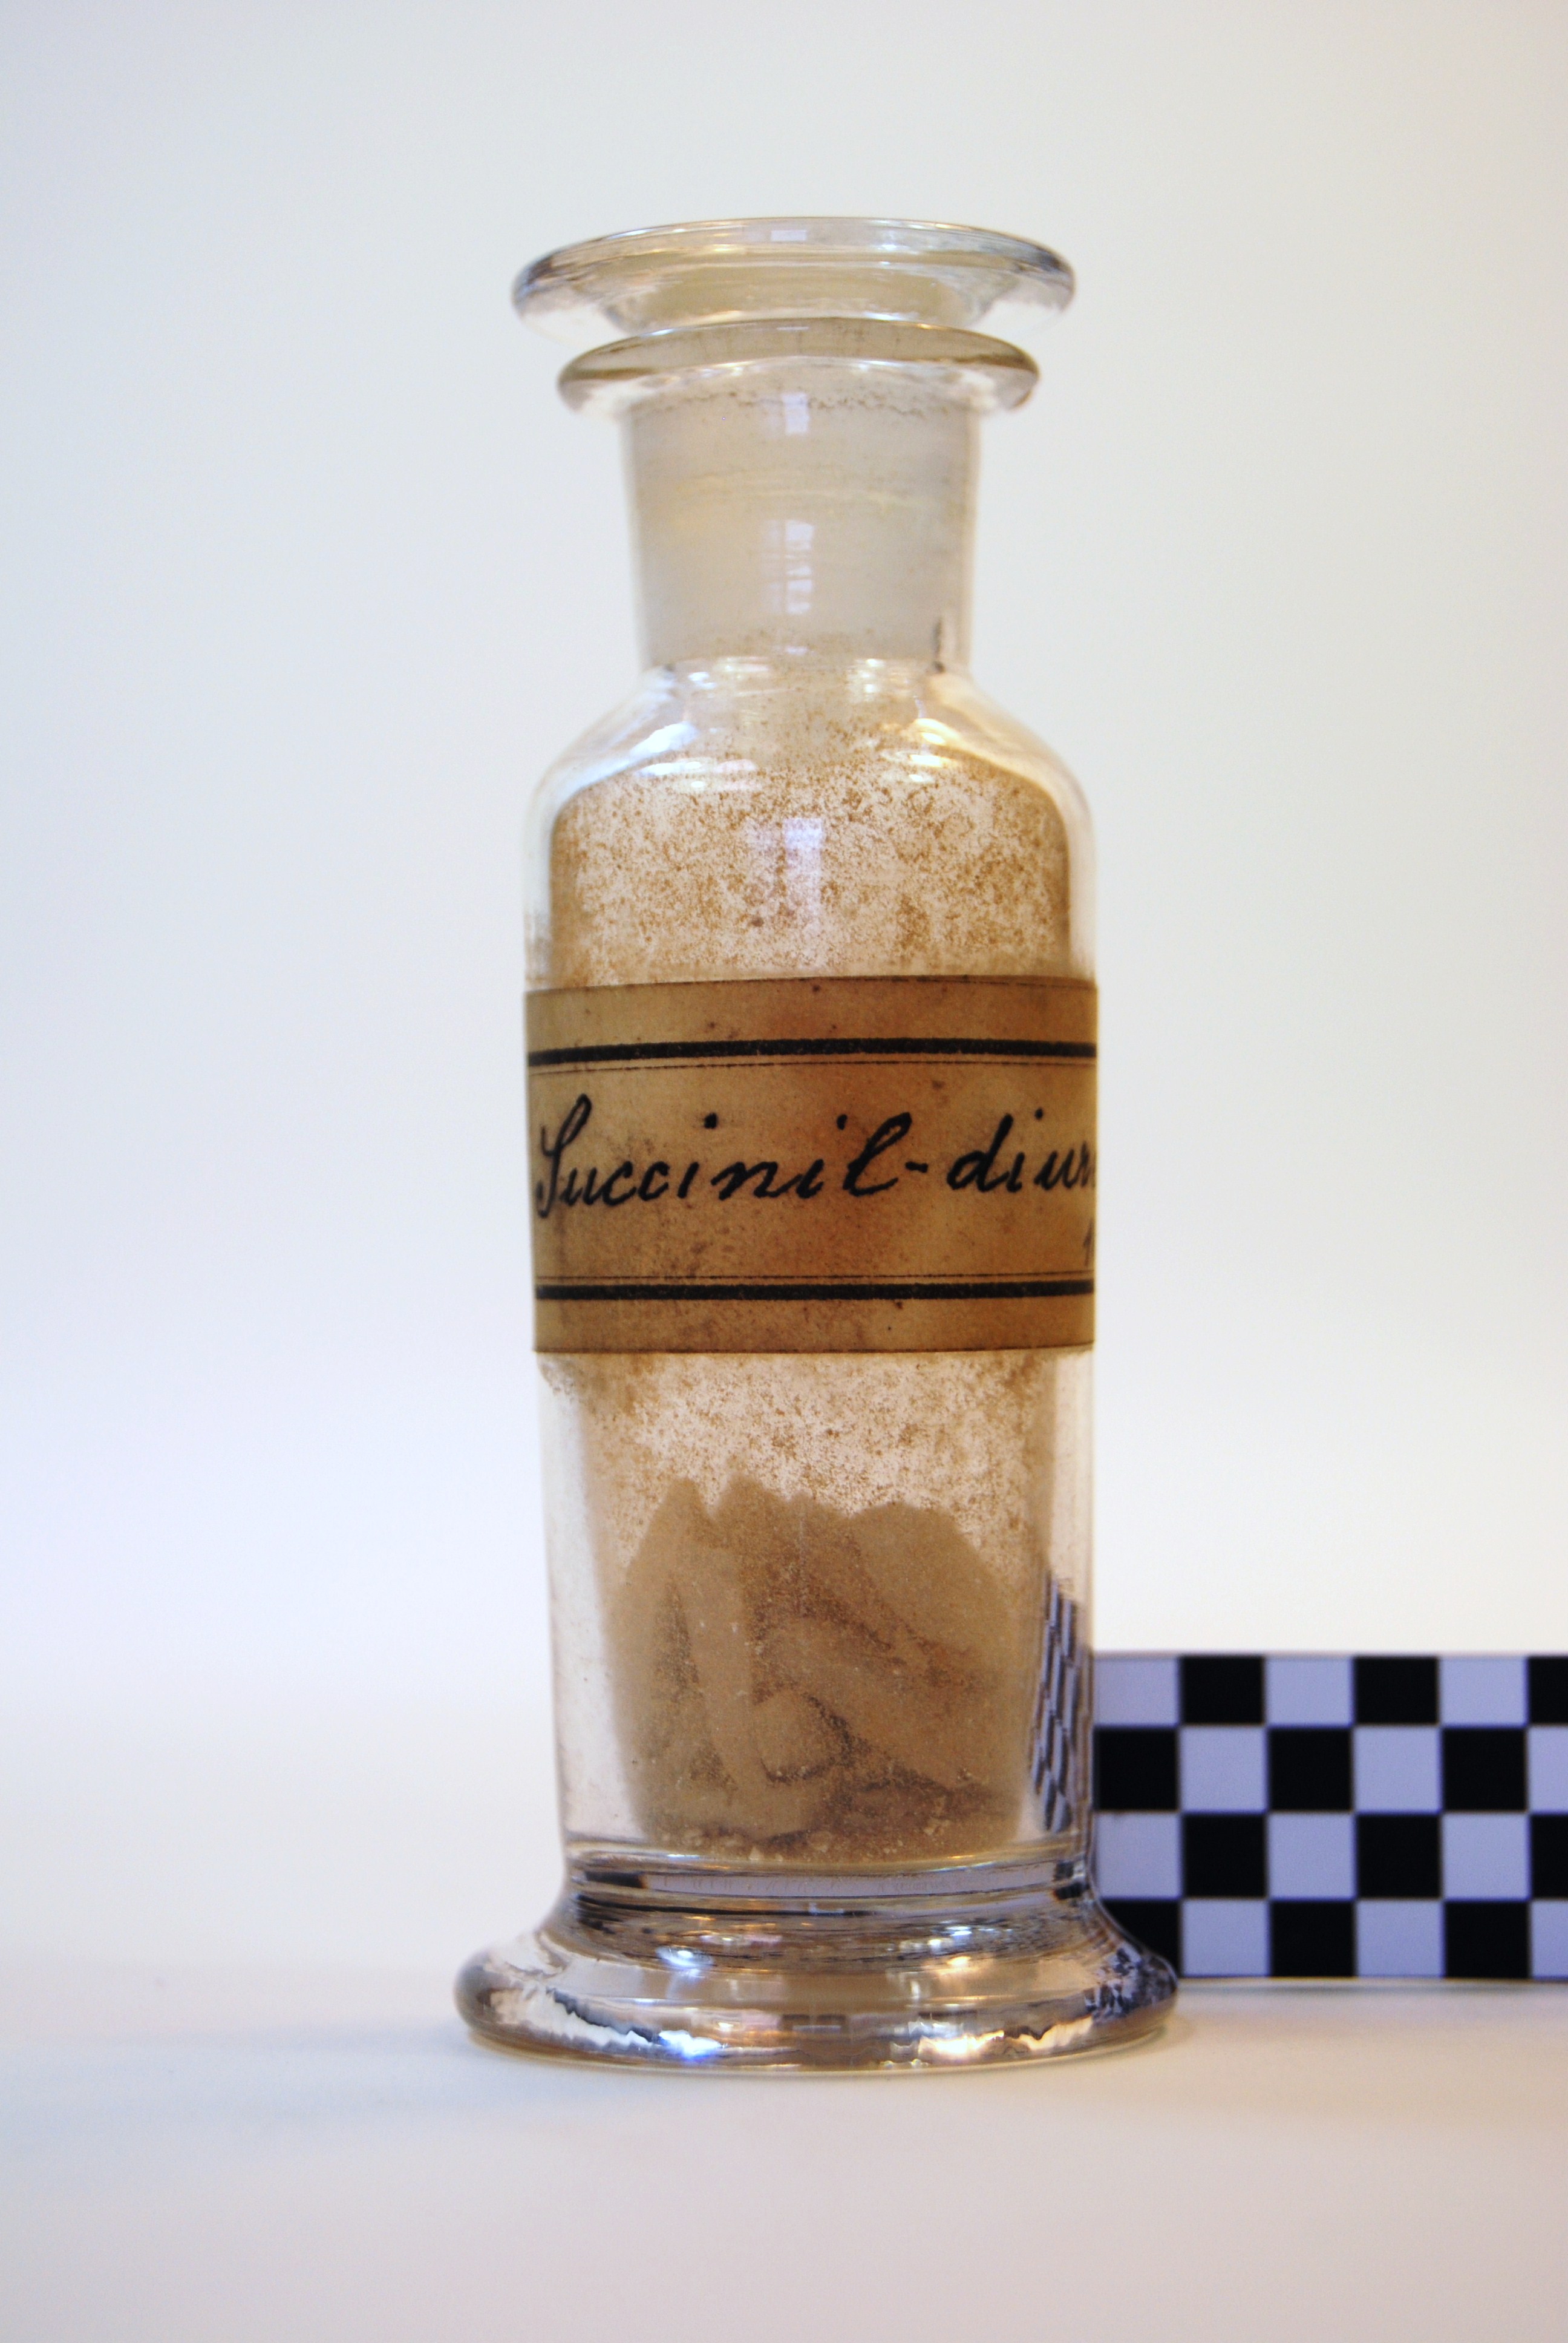 succinil-diurea (prodotto chimico, di sintesi) di Ugo Schiff (laboratorio) - scuola chimica fiorentina (metà/ inizio XIX/ XX)